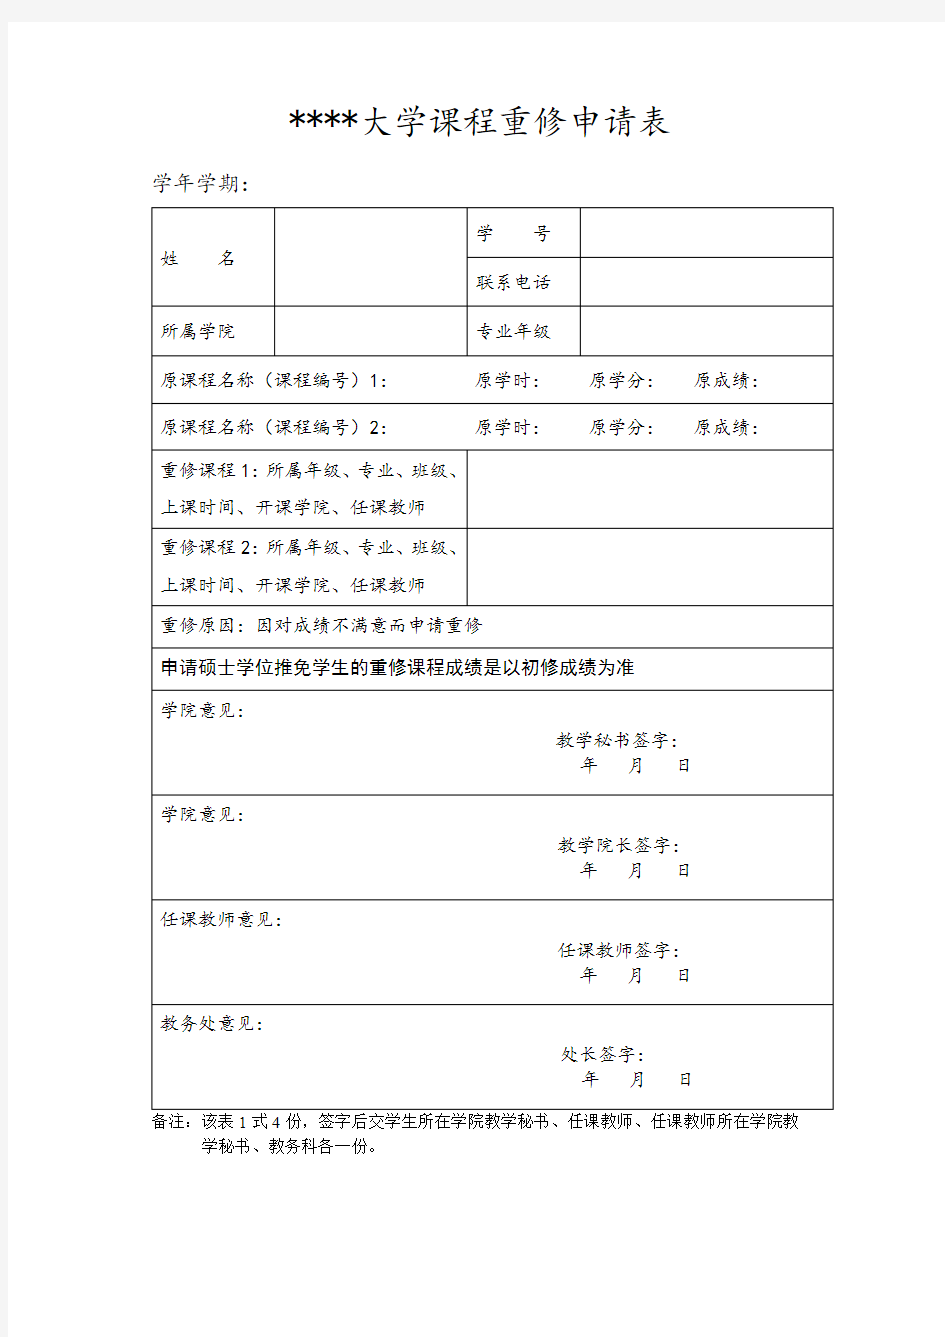 哈尔滨商业大学课程重修申请表【模板】